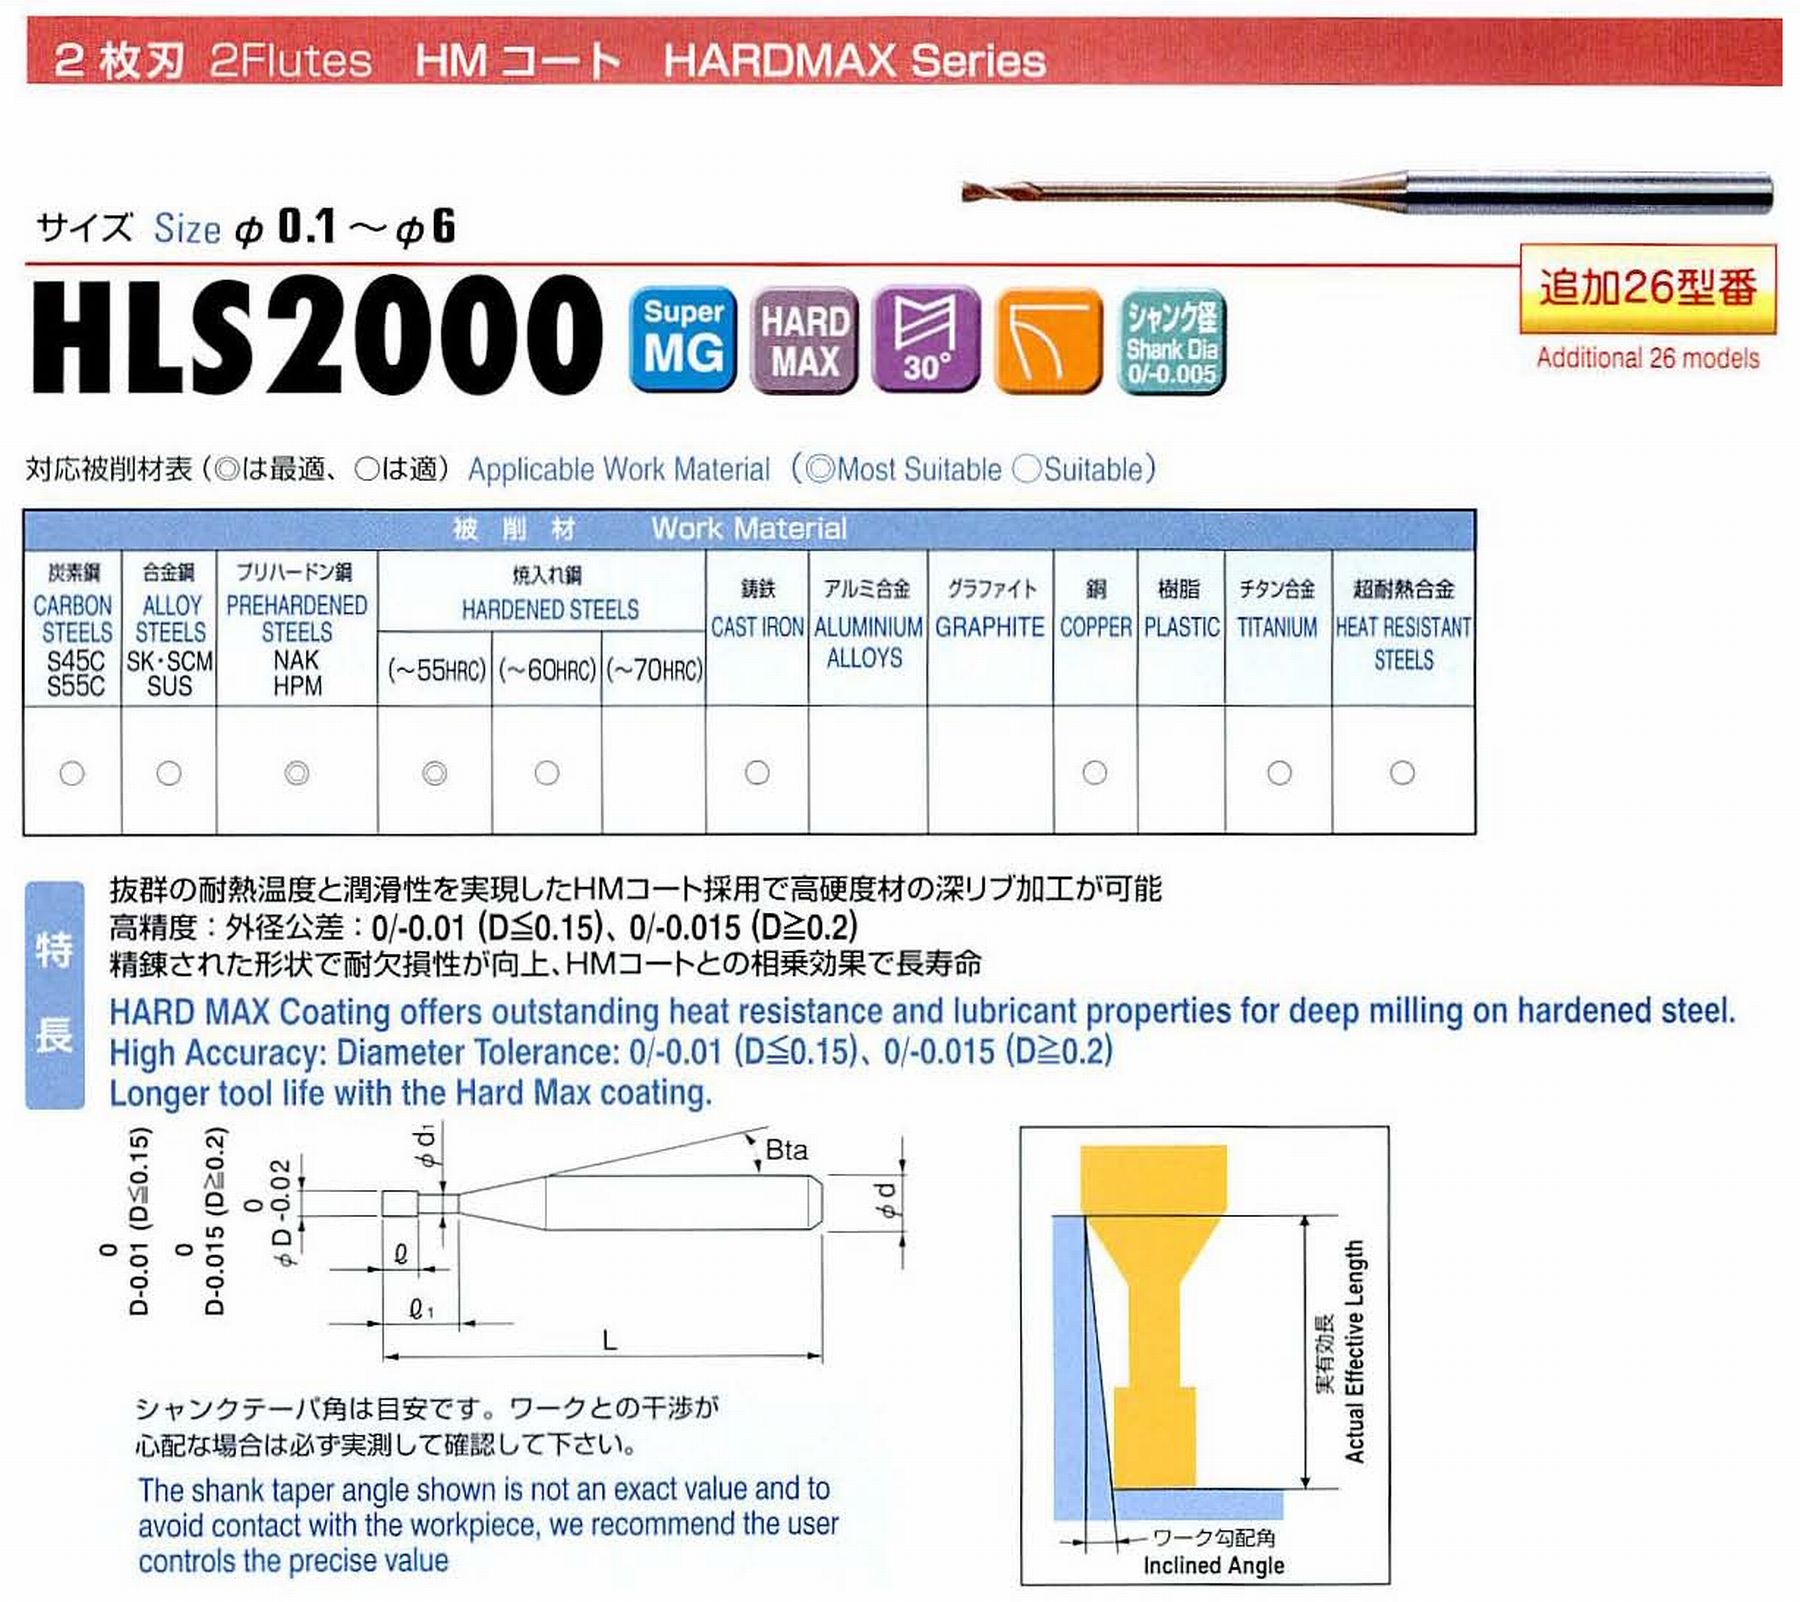 ユニオンツール 2枚刃 HLS2009-060 外径0.9 有効長6 刃長1.3 首径0.88 シャンクテーパ角16° 全長45 シャンク径4